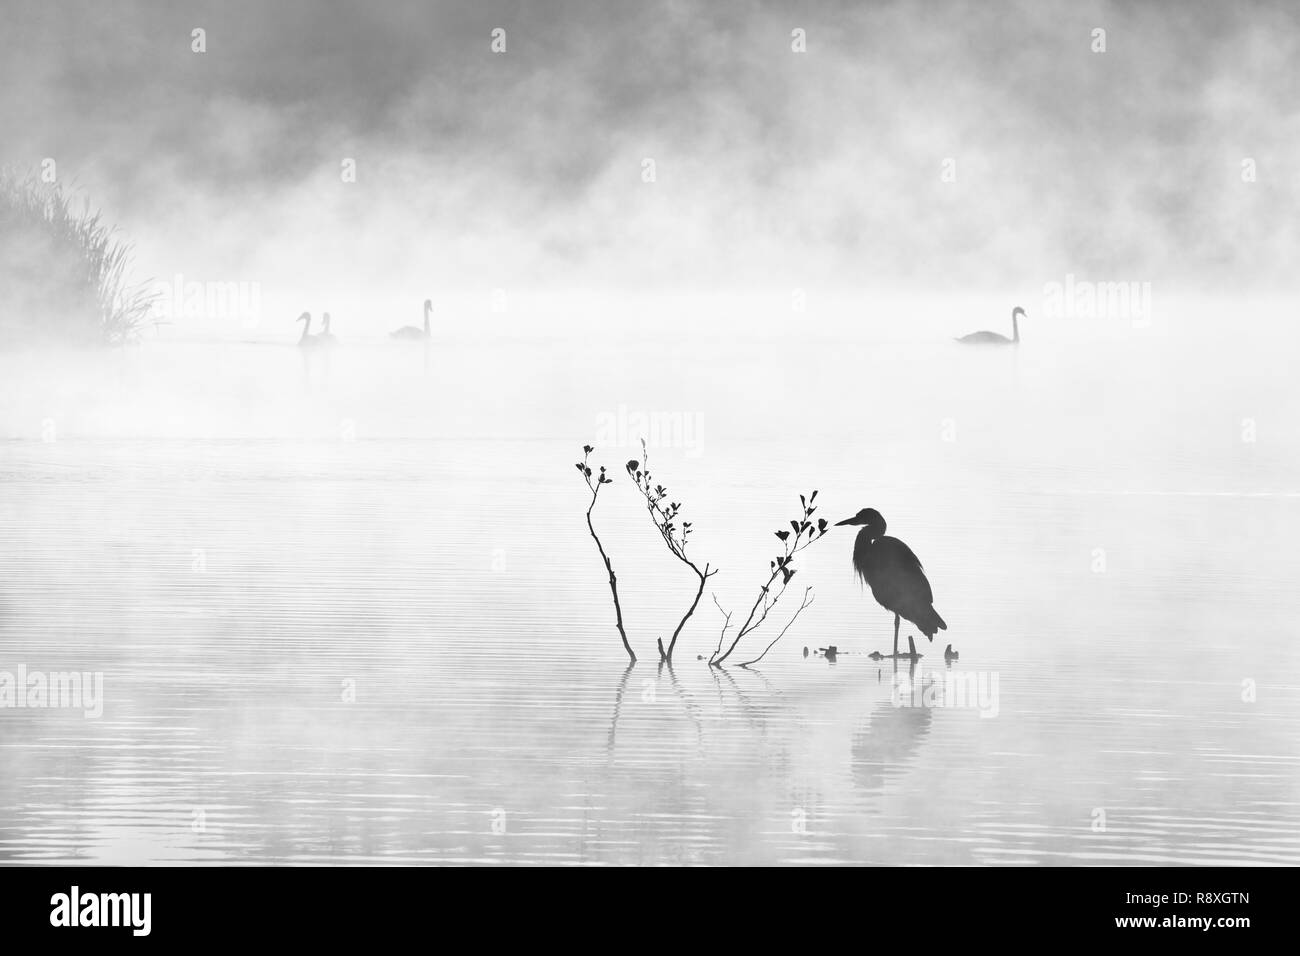 Imagen en blanco y negro atmosférica de Birdlife en un lago brumoso al amanecer Foto de stock